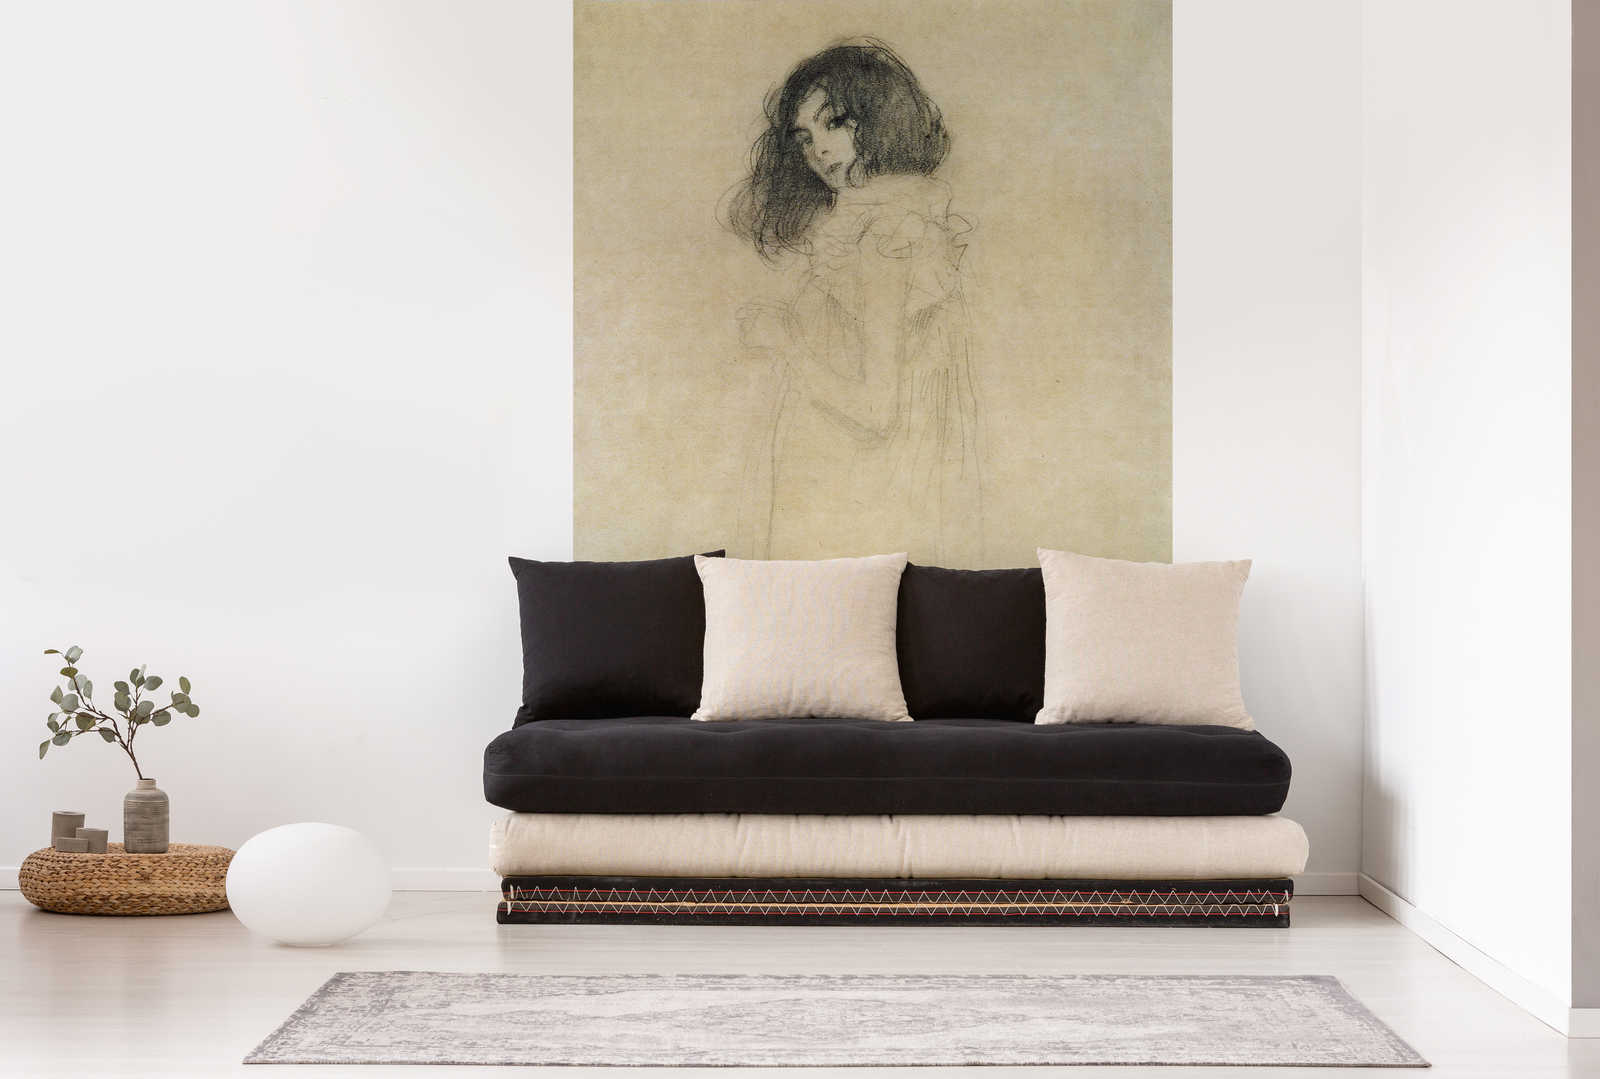             Portret van mevrouw Gl." muurschildering van Gustav Klimt
        